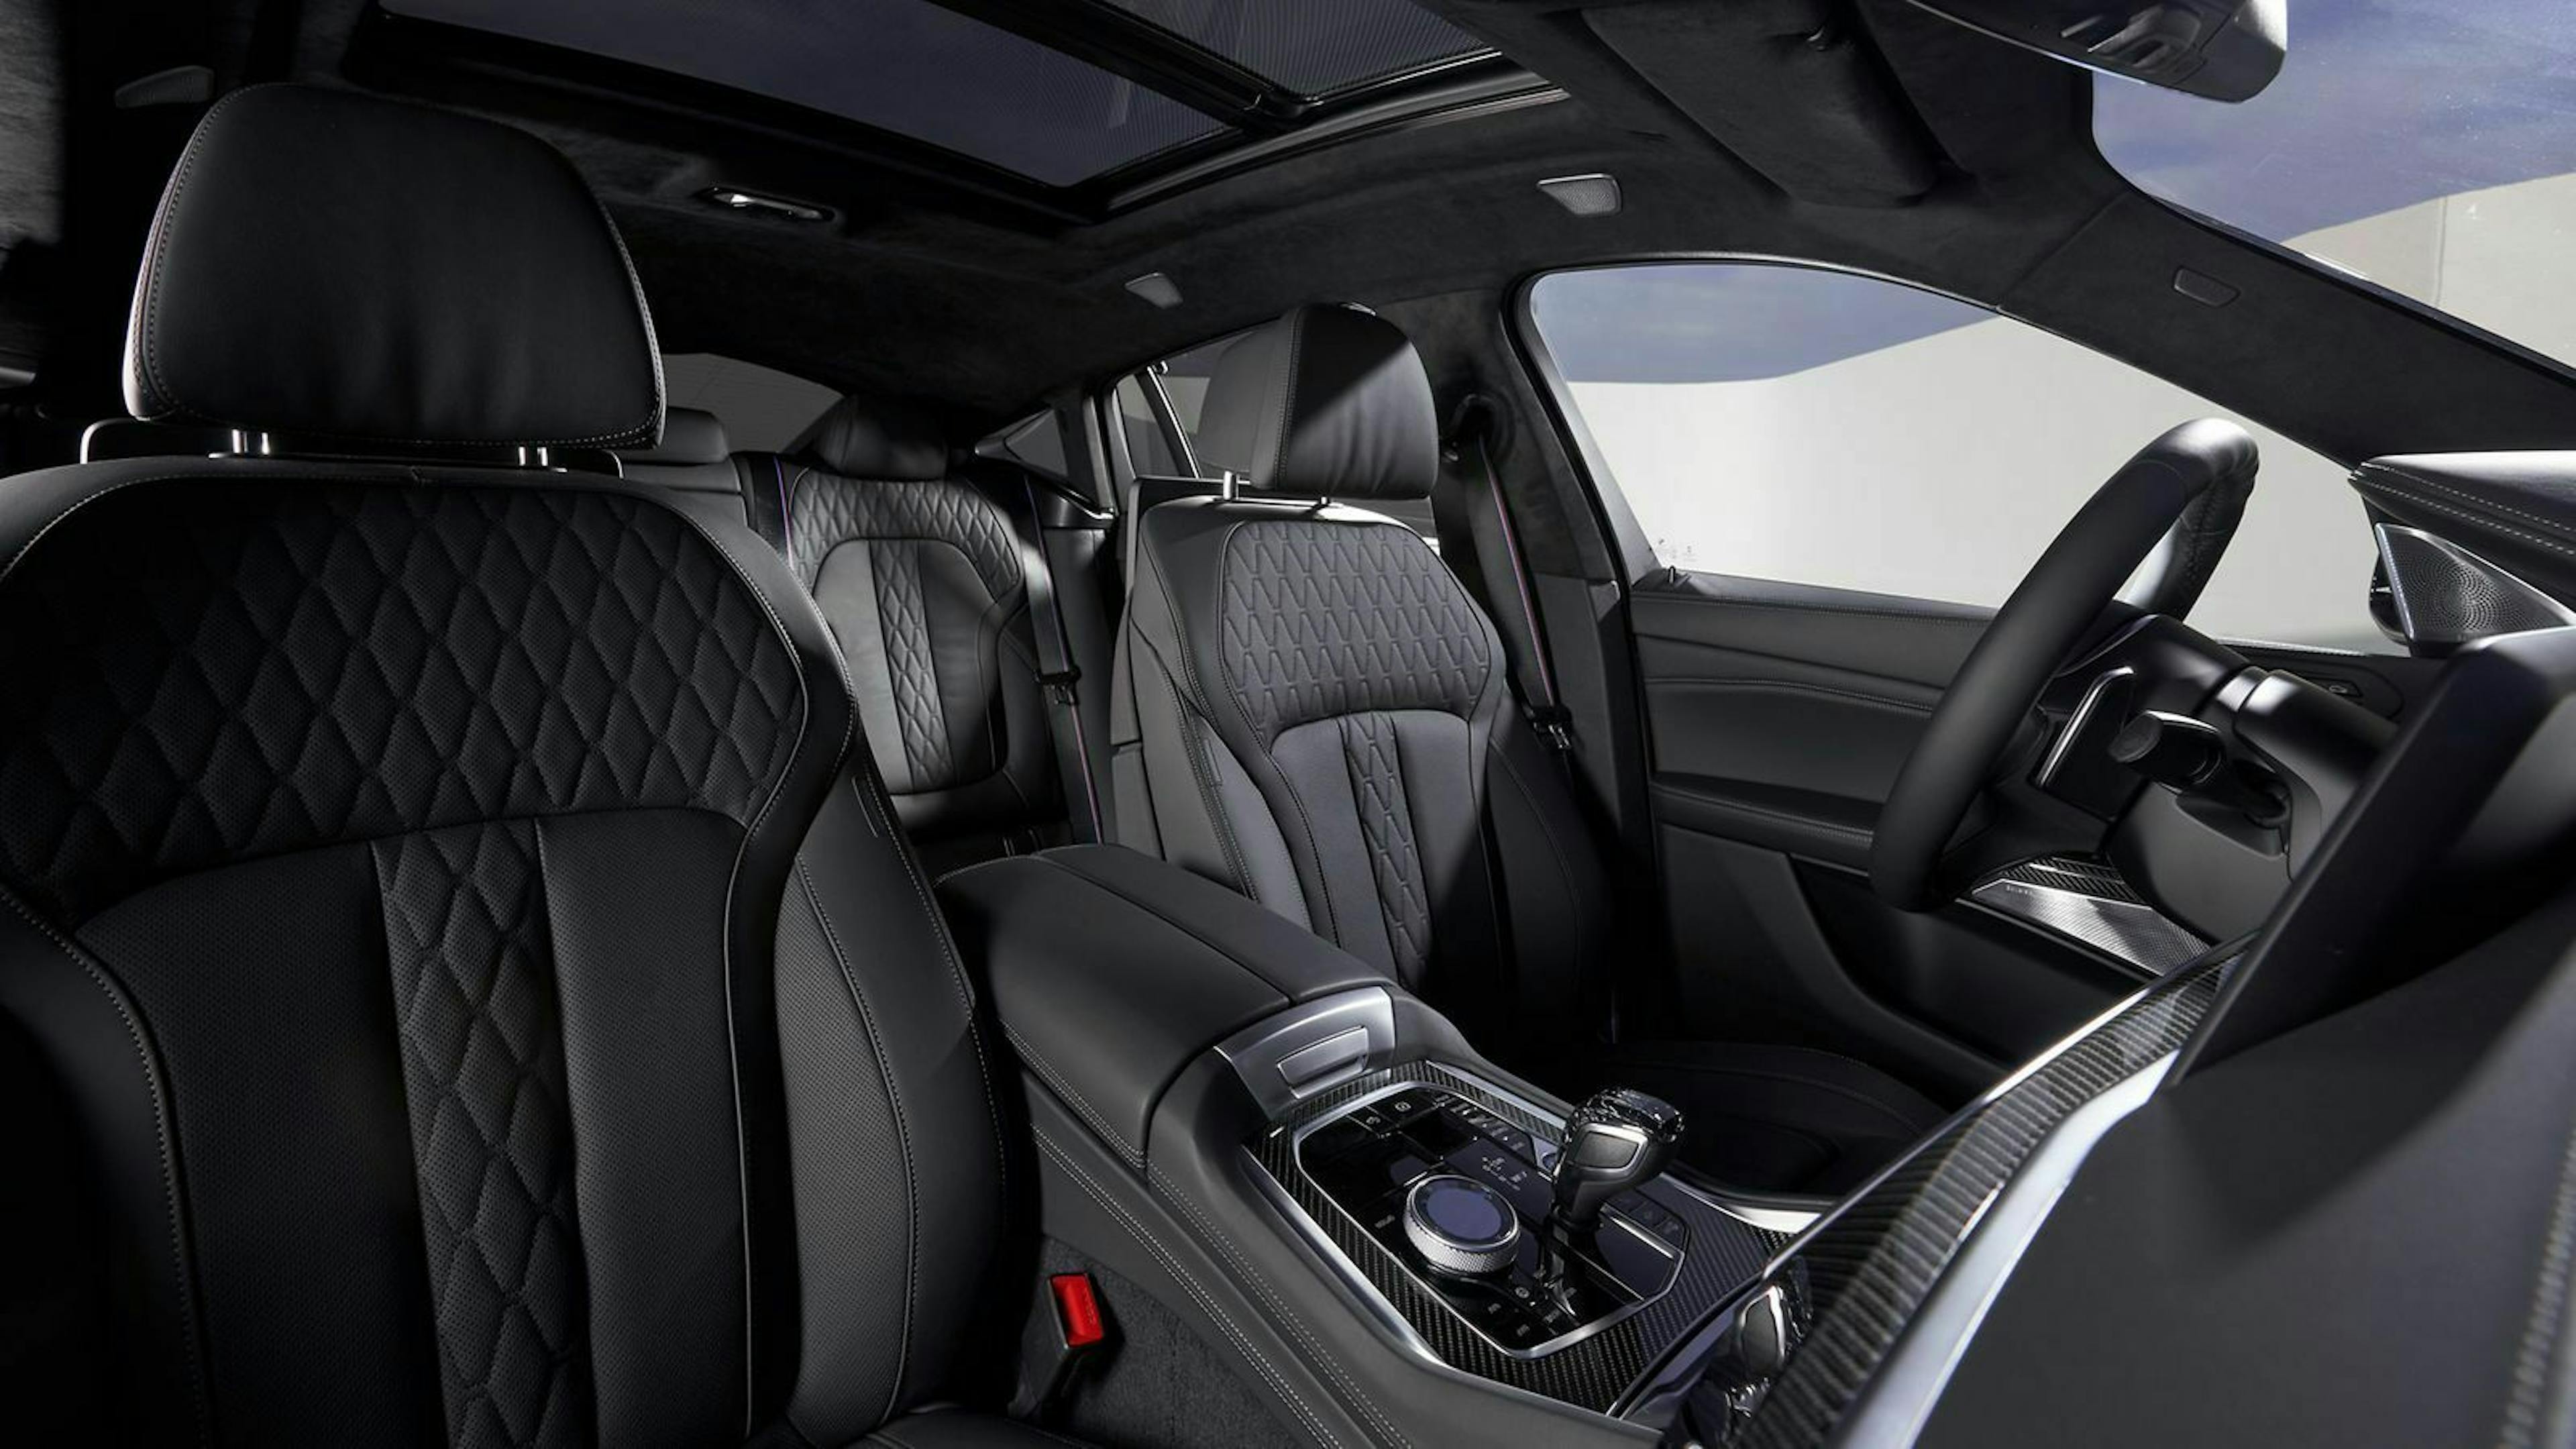 Wer mag, kann den BMW X6 natürlich mit fein gestepptem Leder auf den Sitzen ausstatten. Gegen Aufpreis